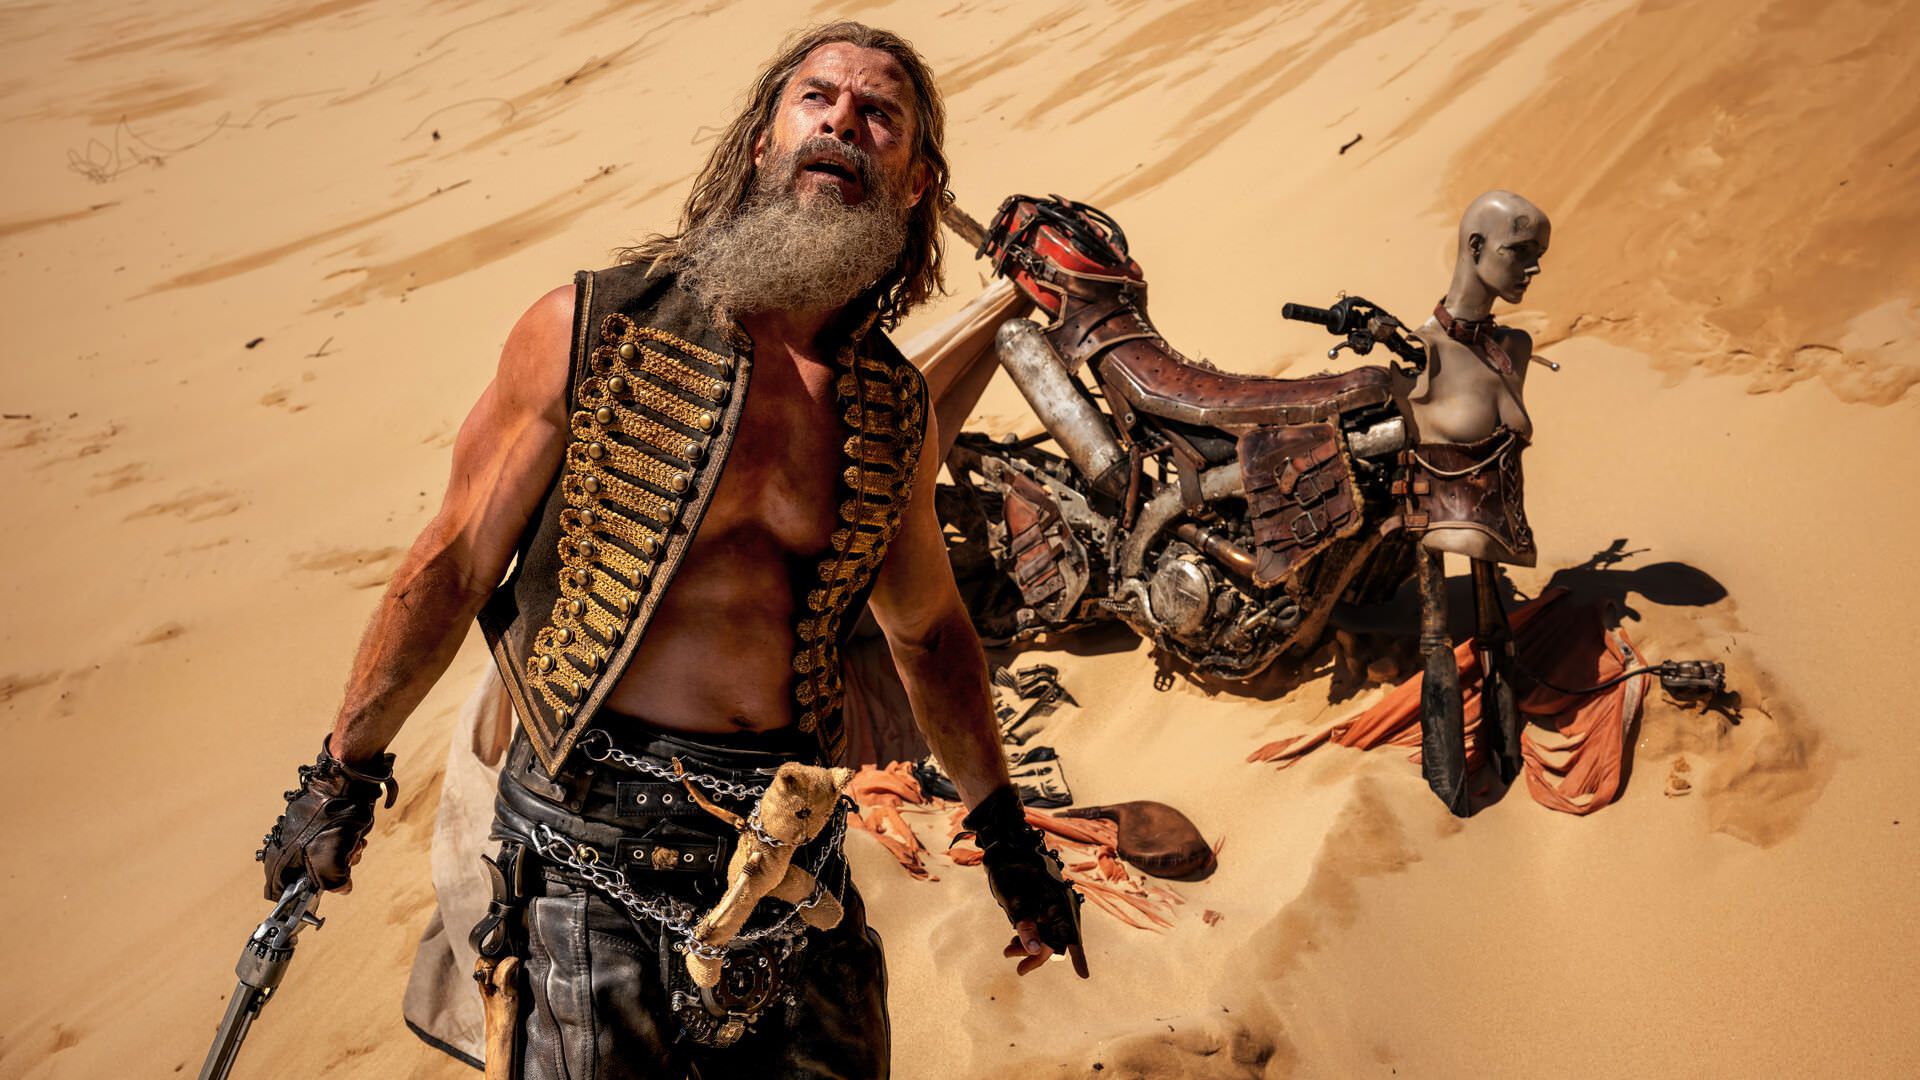 کریس همسورث در نقش Warlord Dementus در Furiosa: A Mad Max Saga از نقش خود کناره گیری کرد.